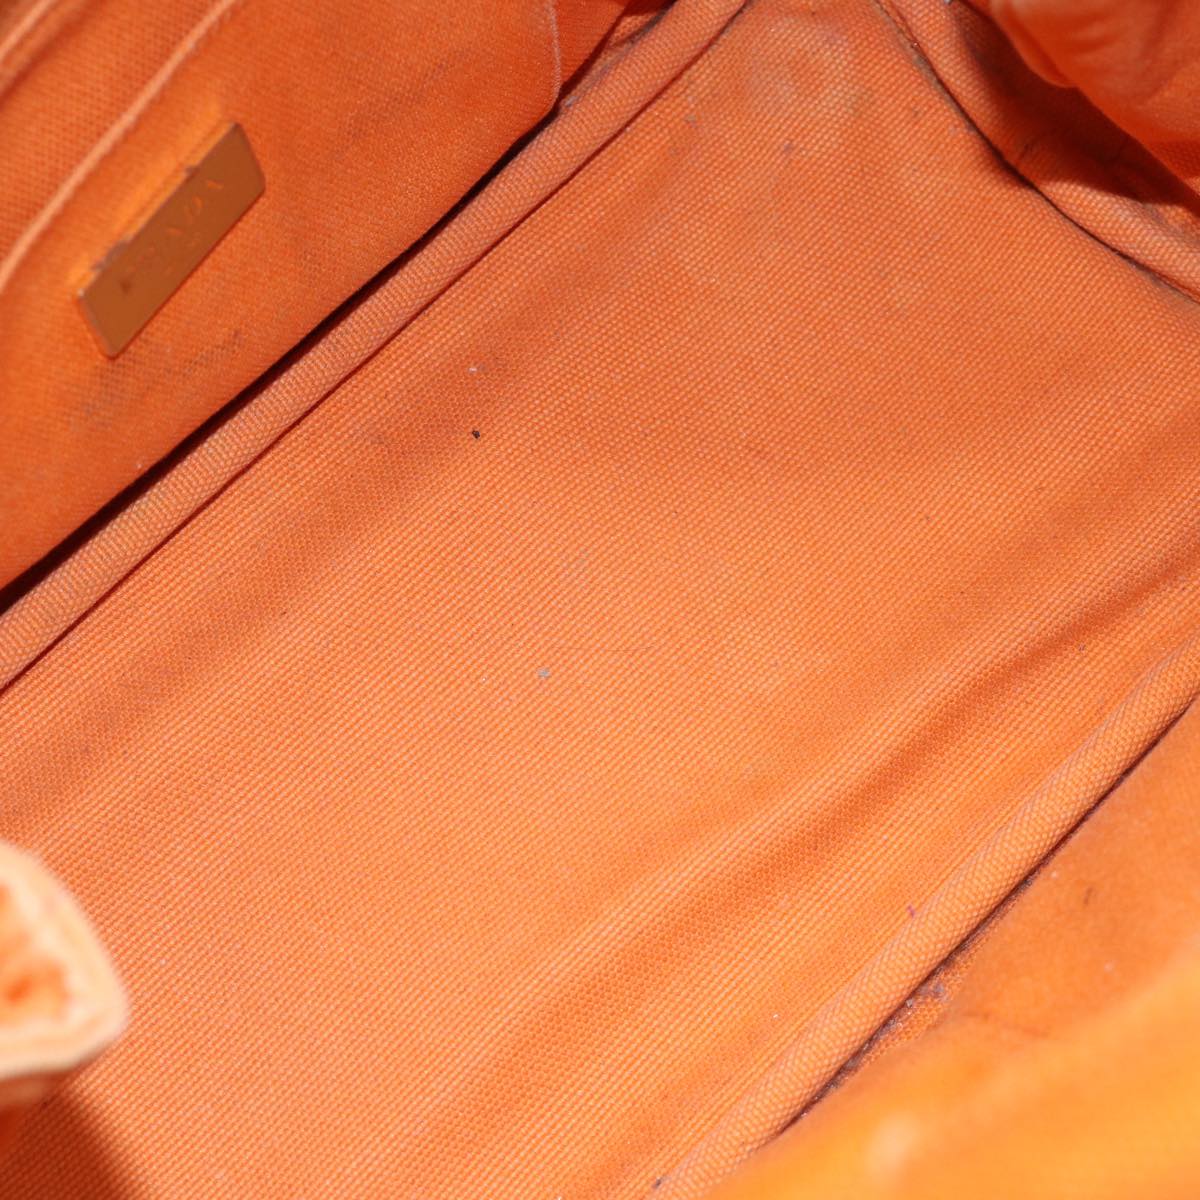 PRADA Canapa PM Hand Bag Canvas Orange Auth ep4144